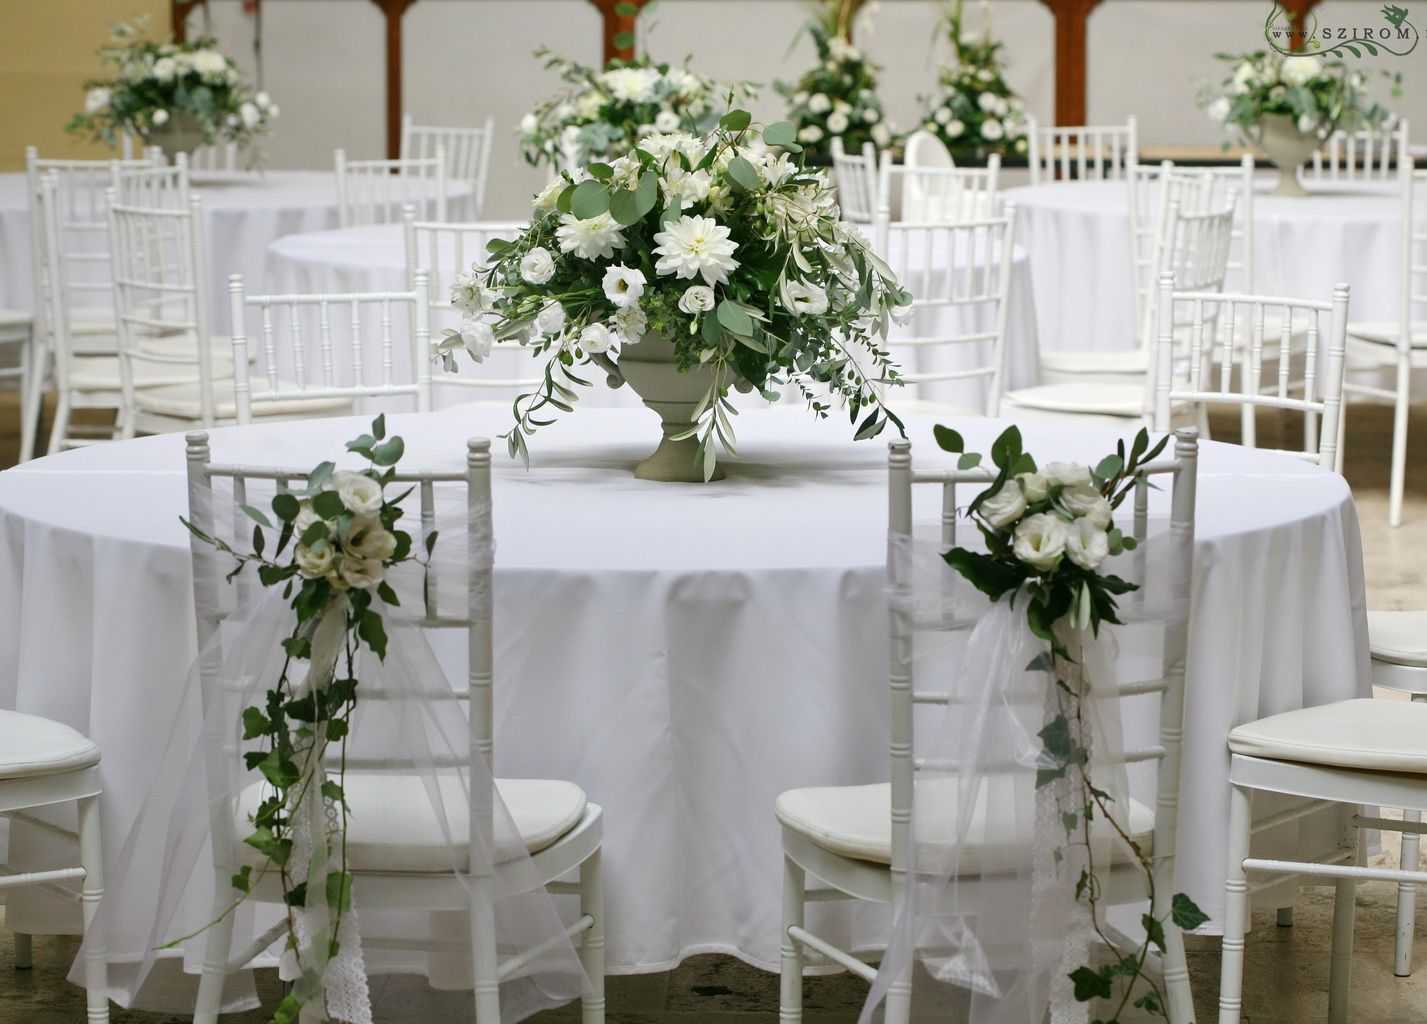 1 db Főasztaldísz Vajdahunyad vára (liziantusz, dália, alstromelia, anemone, fehér ), esküvő